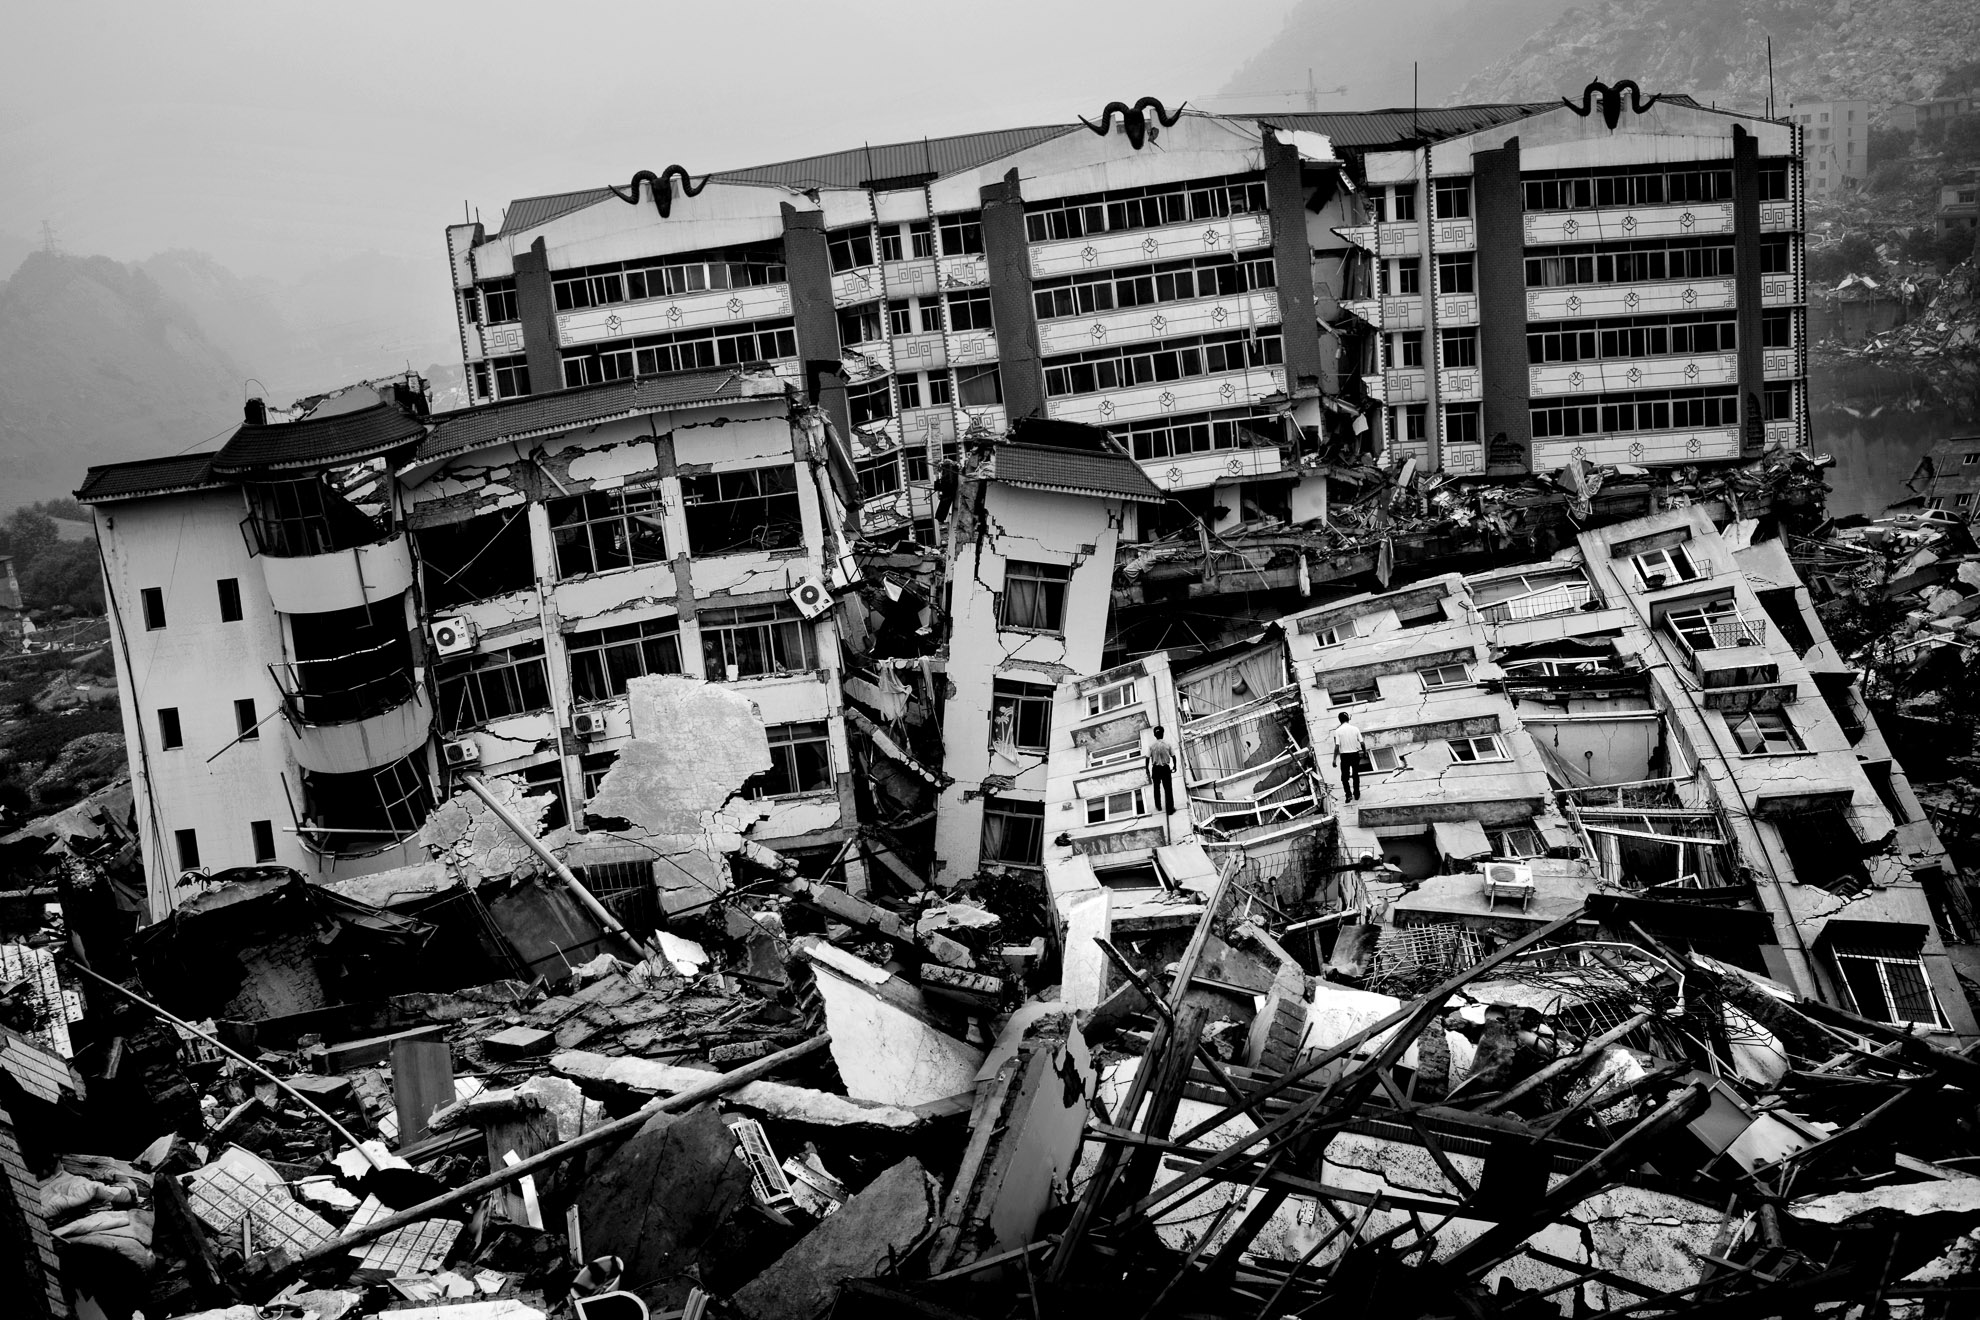 Escombros en la ciudad de Beichuan, una de las regiones de Sichuan más afectadas por el terremoto. Casi todo el condado quedó destruido. La calidad de la construcción en esta zona está bajo escrutinio público e institucional.